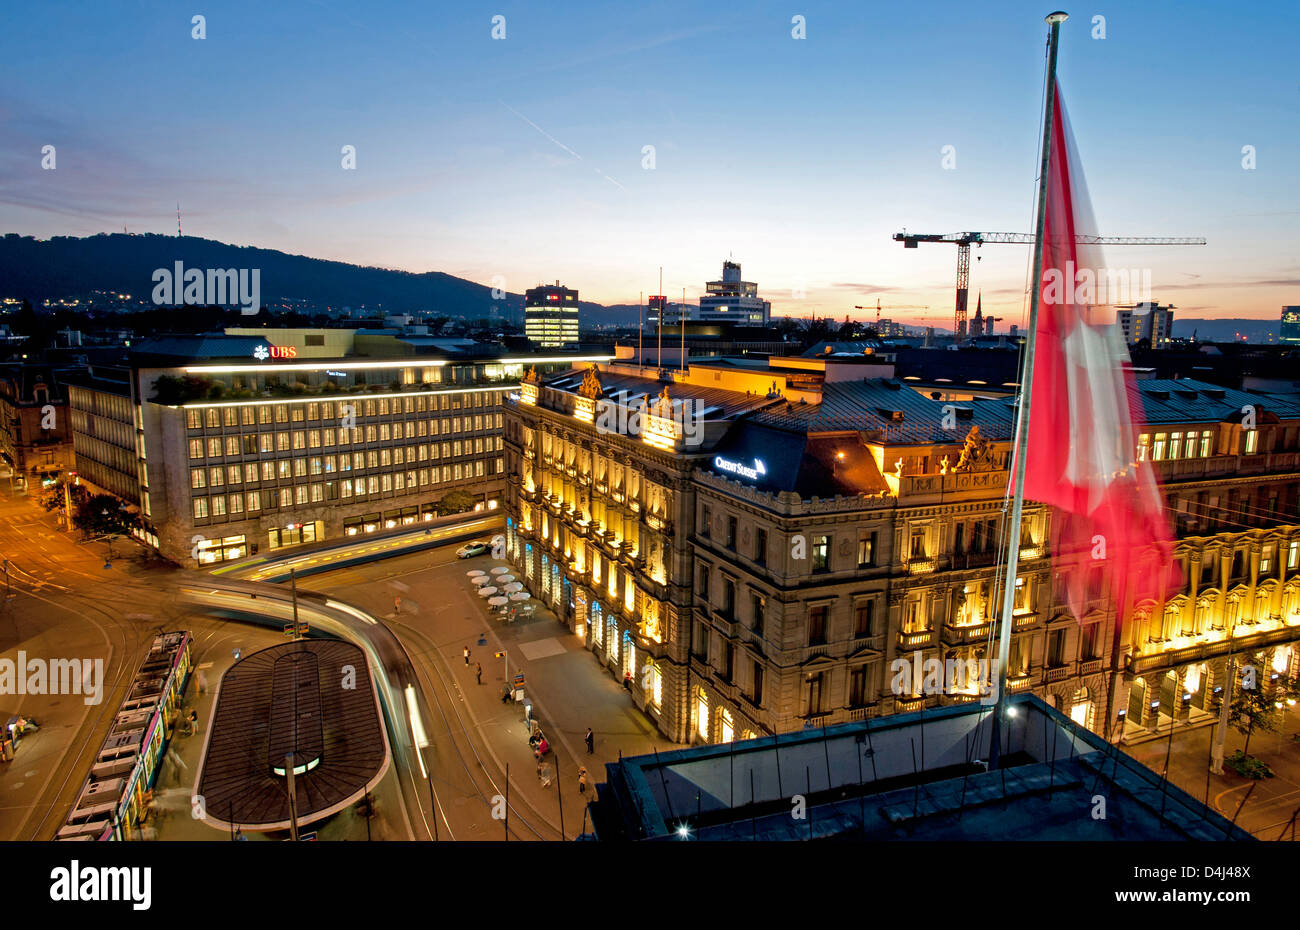 Zurigo, Svizzera, parata a terra con la banca UBS e Credit Suisse Foto Stock